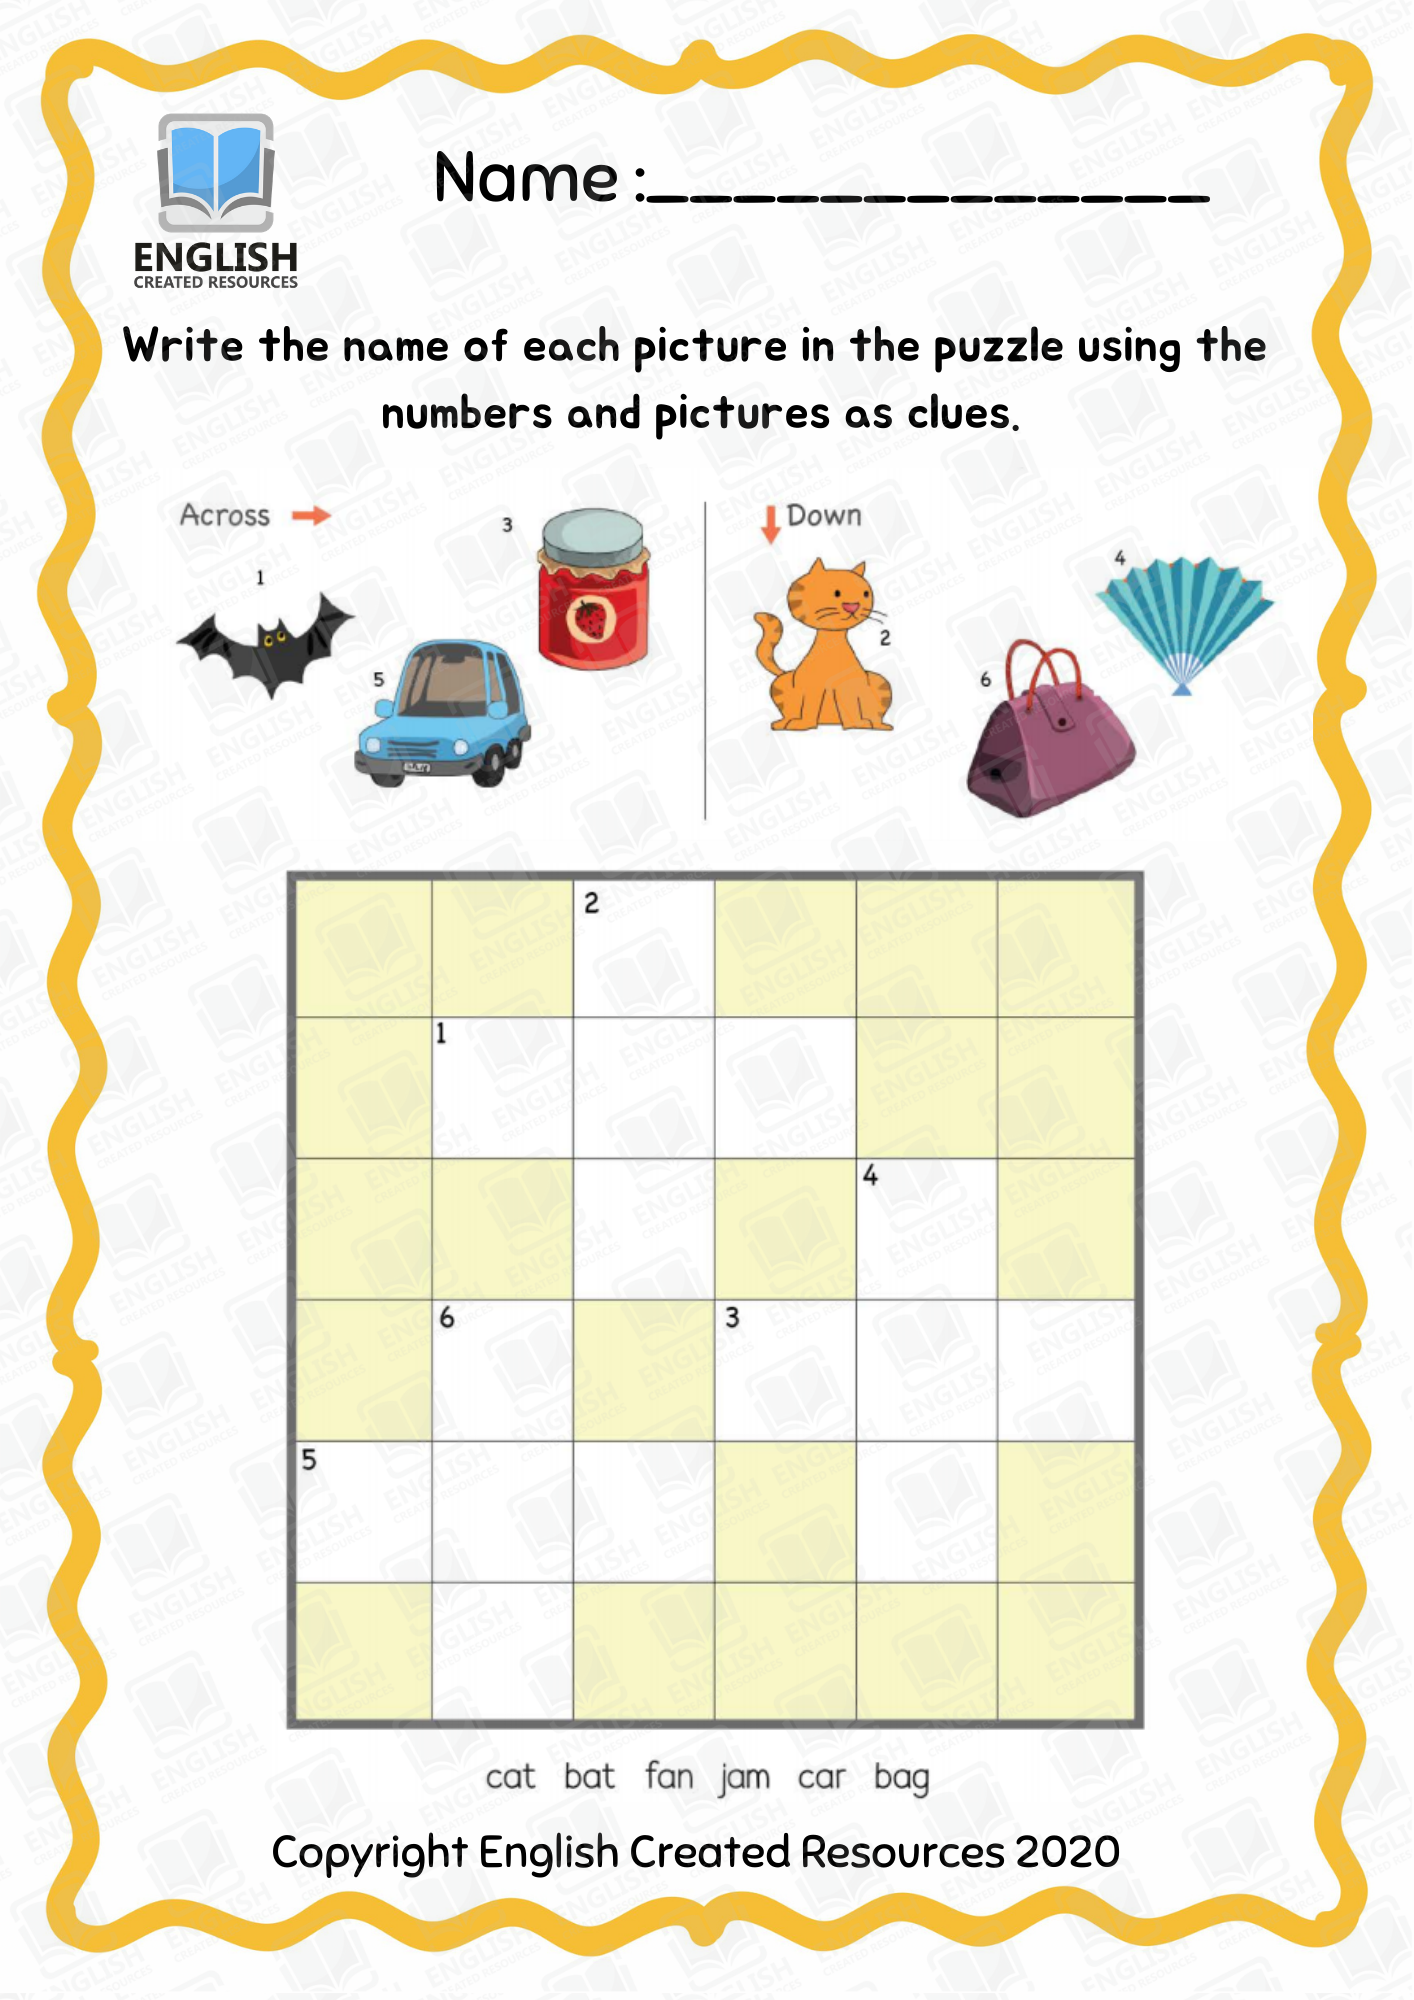 kindergarten-crossword-puzzle